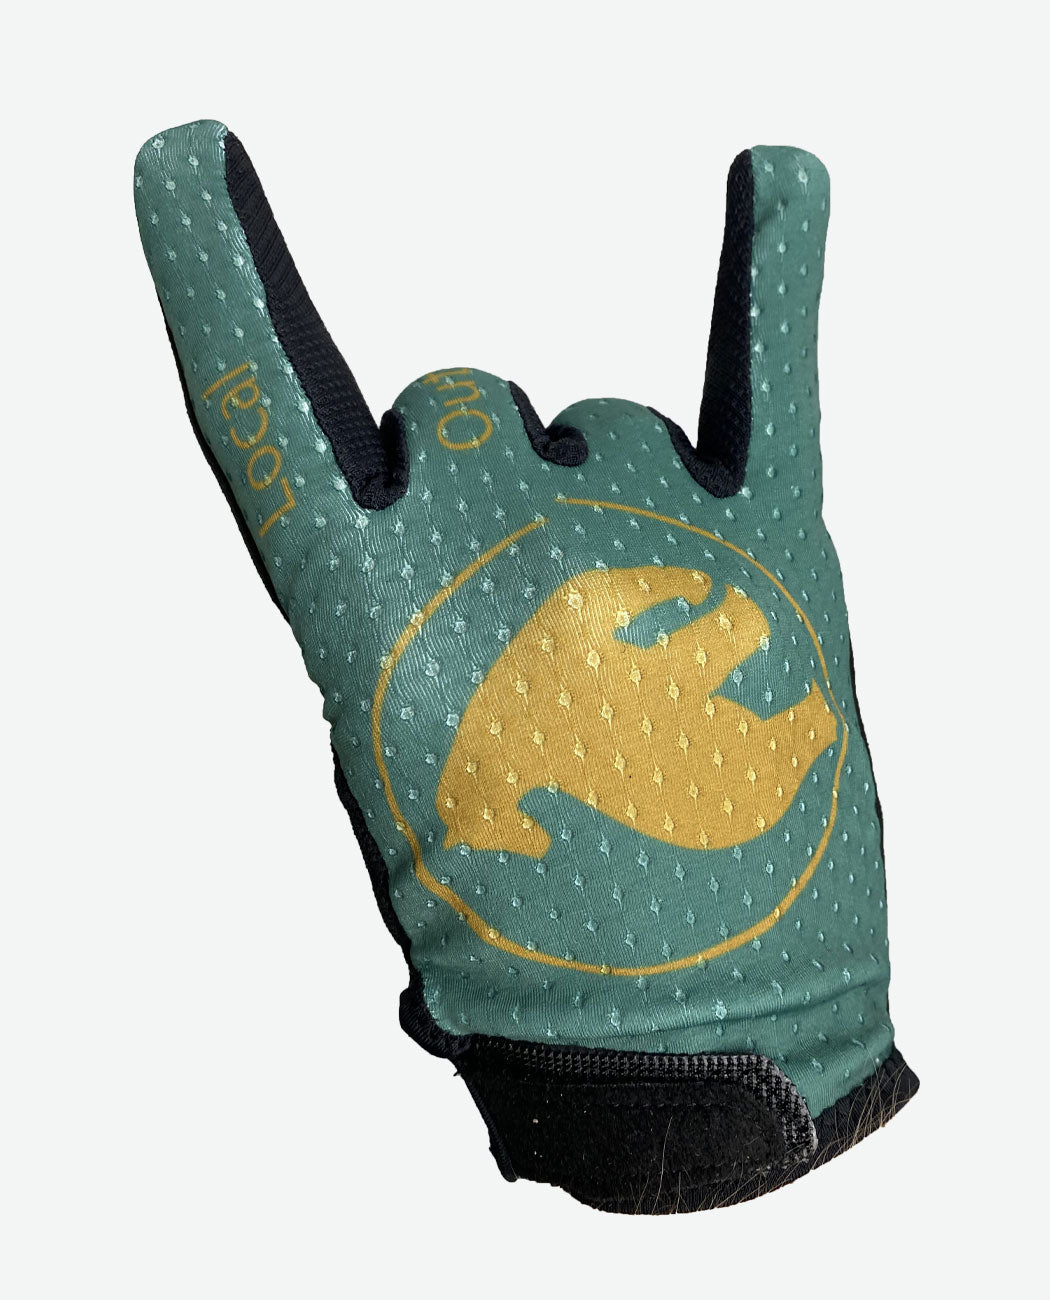 Glove "Logo"